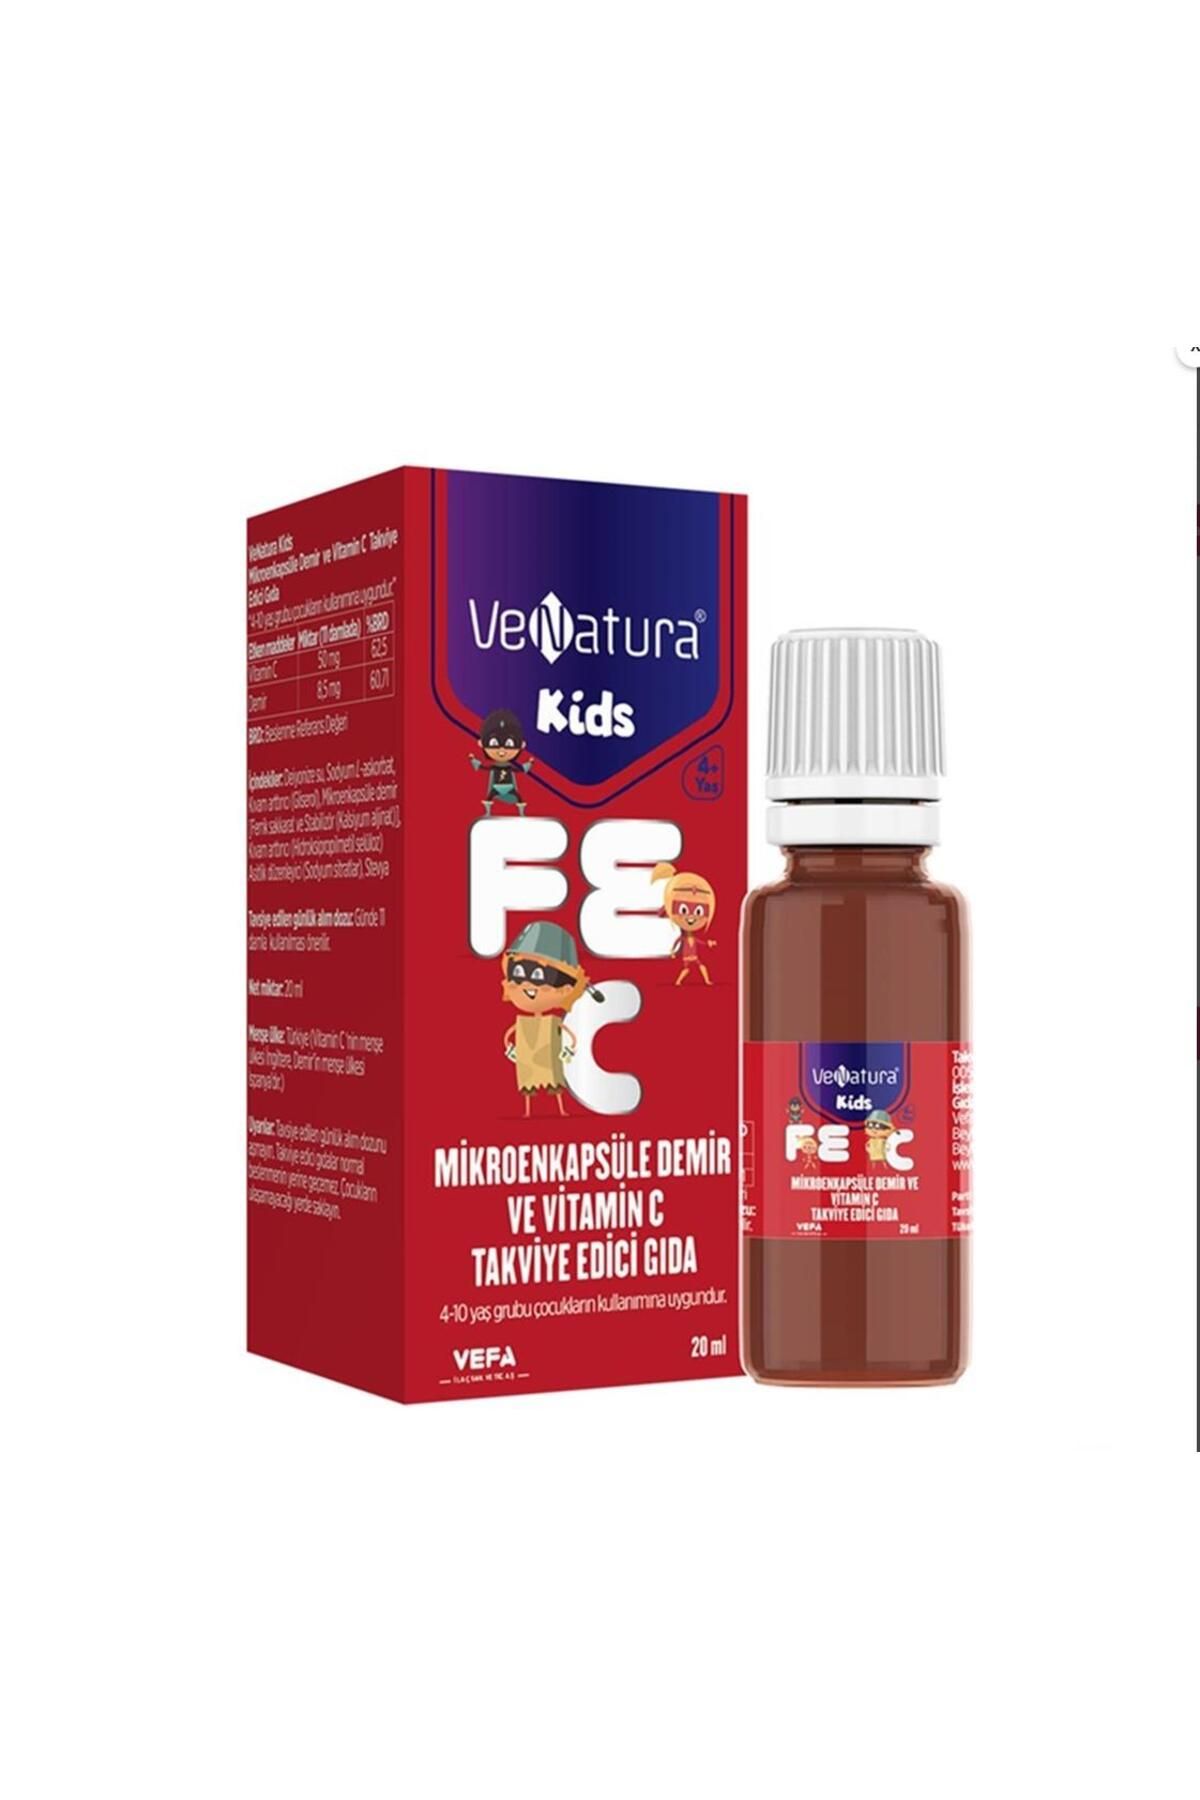 Vaseline VeNatura Kids Mikroenkapsüle Demir ve Vitamin C Damla 20 ml